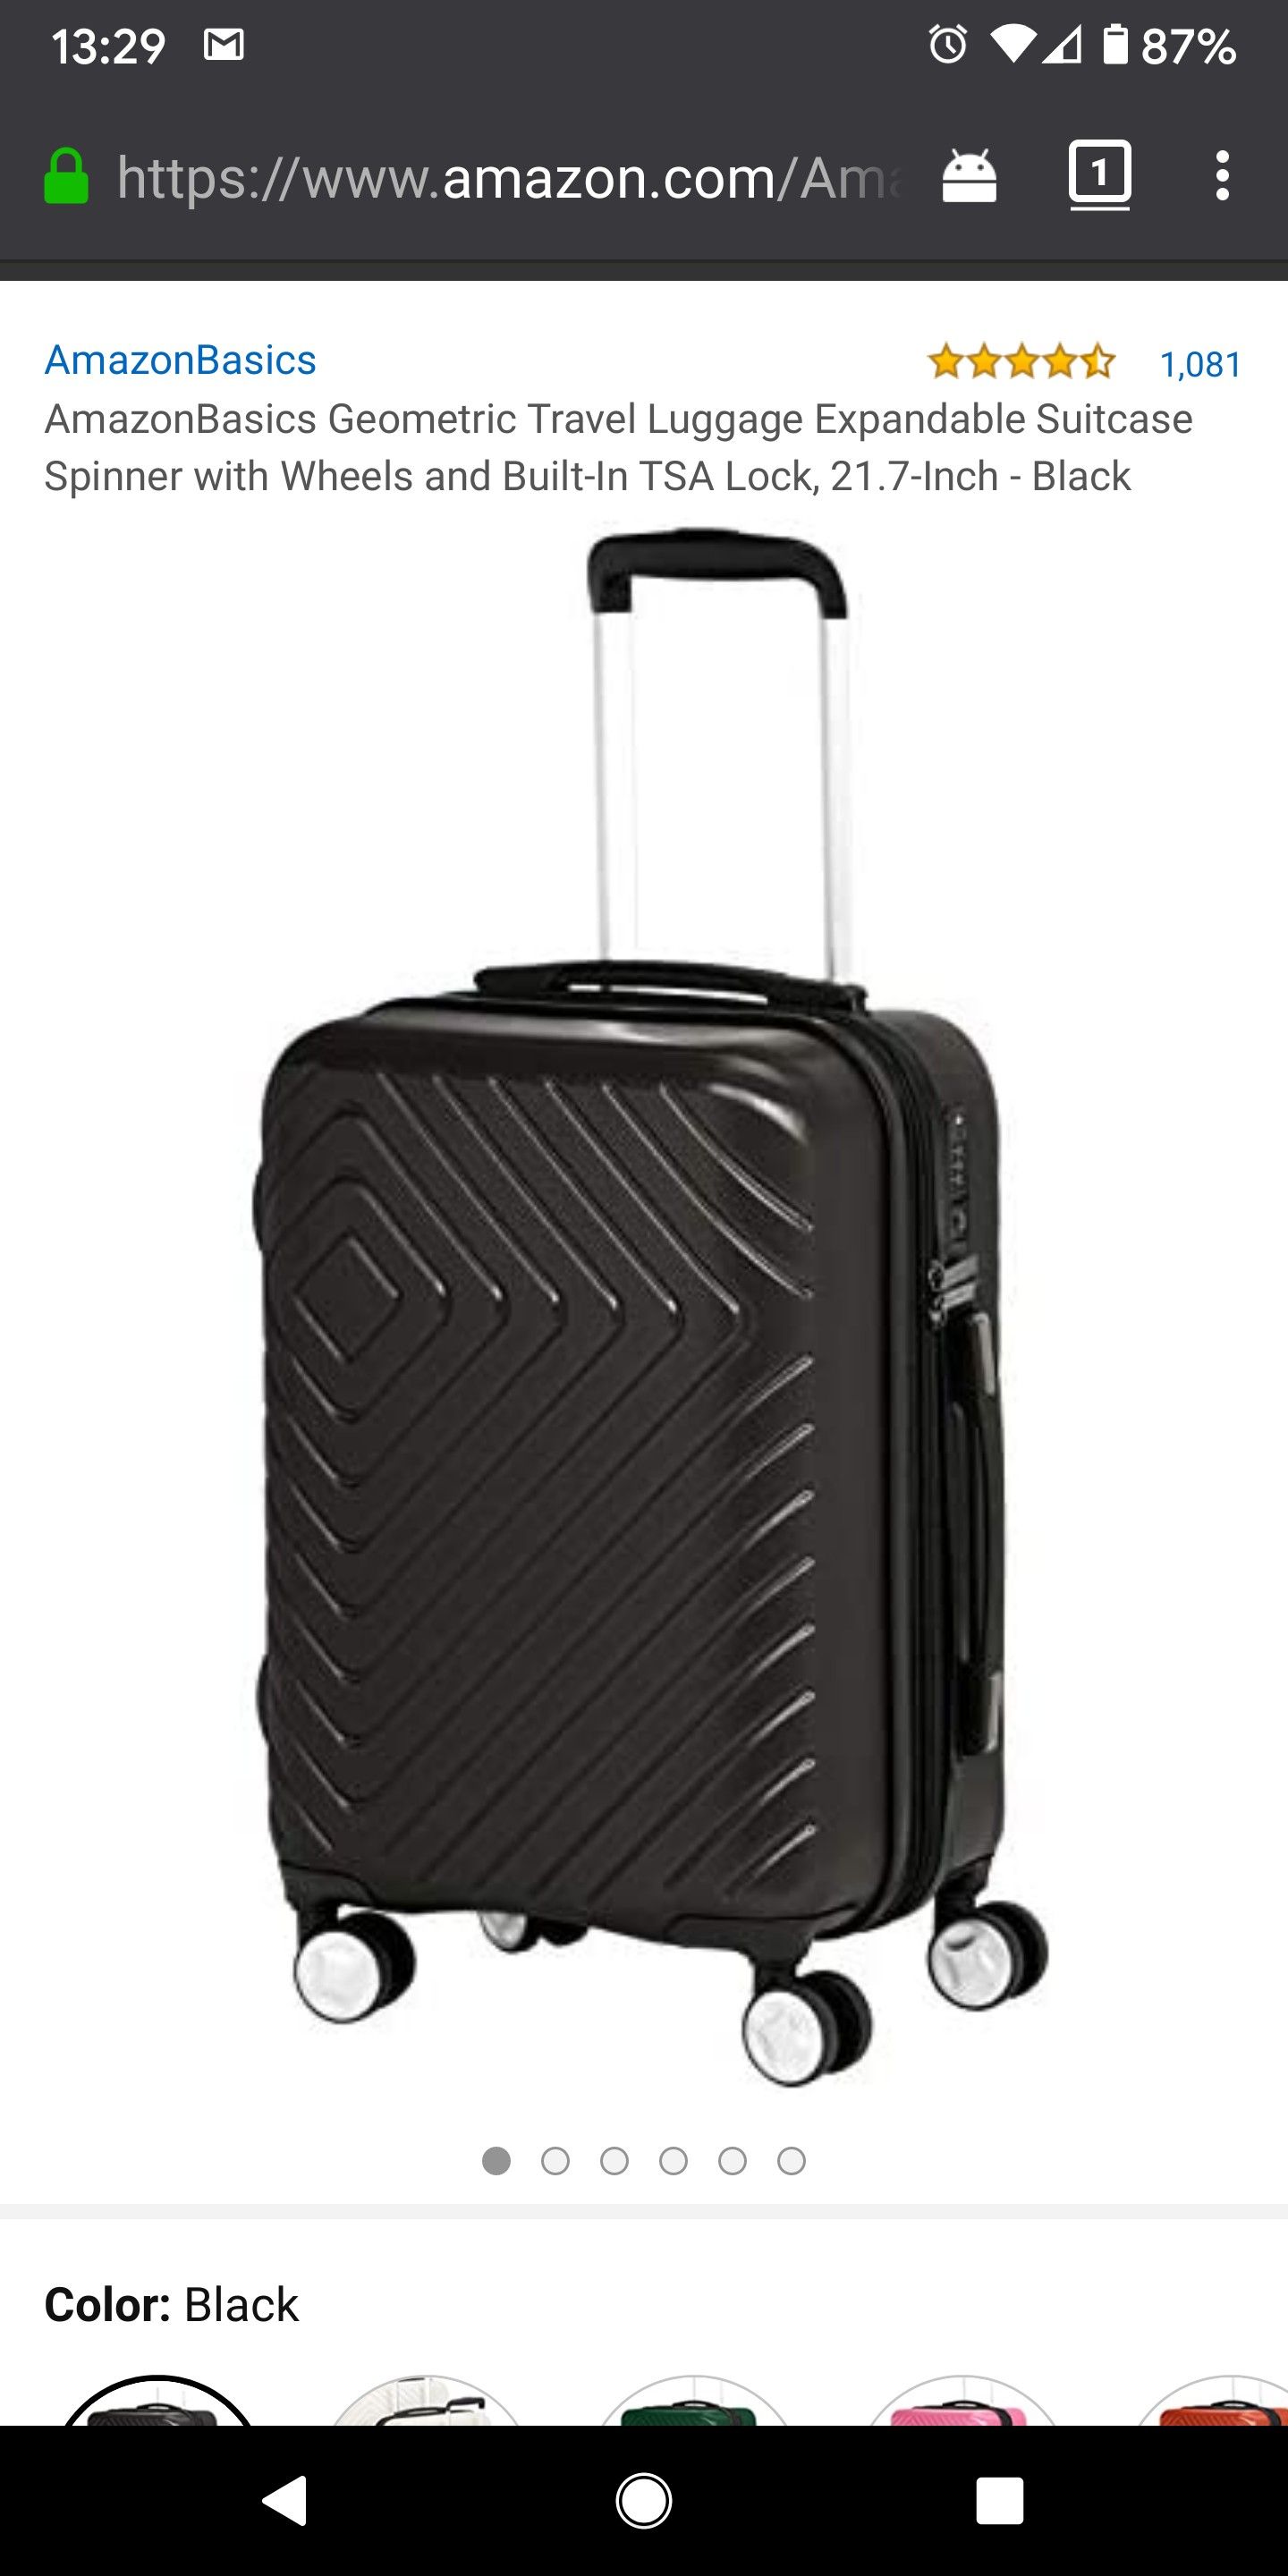 Unopened Amazon basics carry on luggage